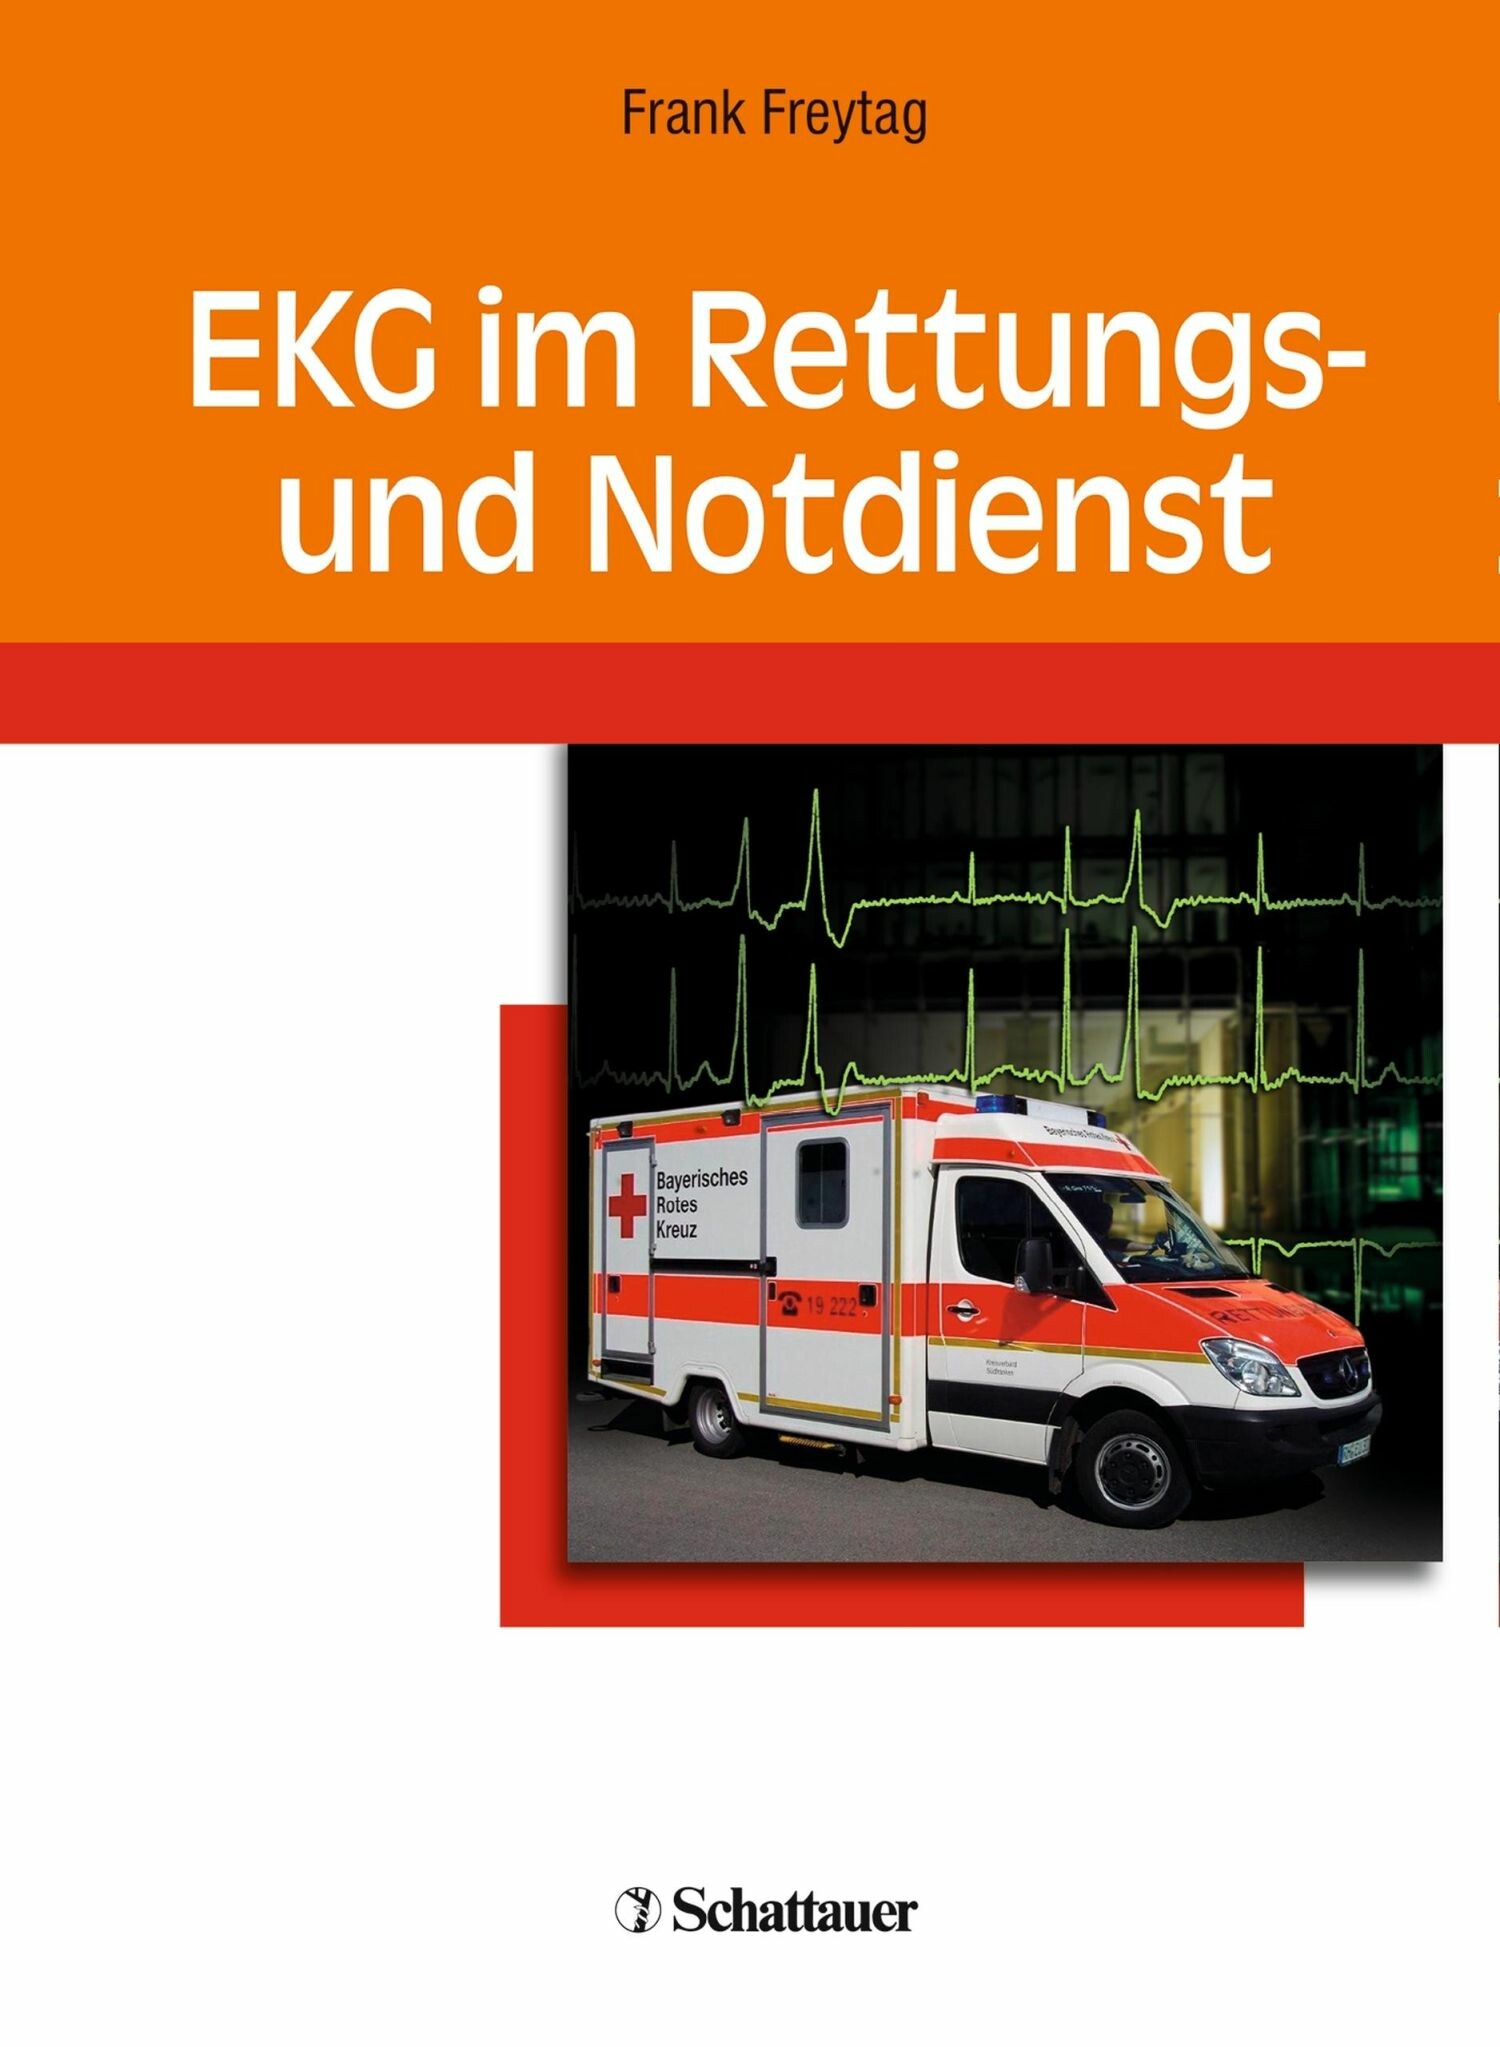 EKG im Rettungs und Notdienst